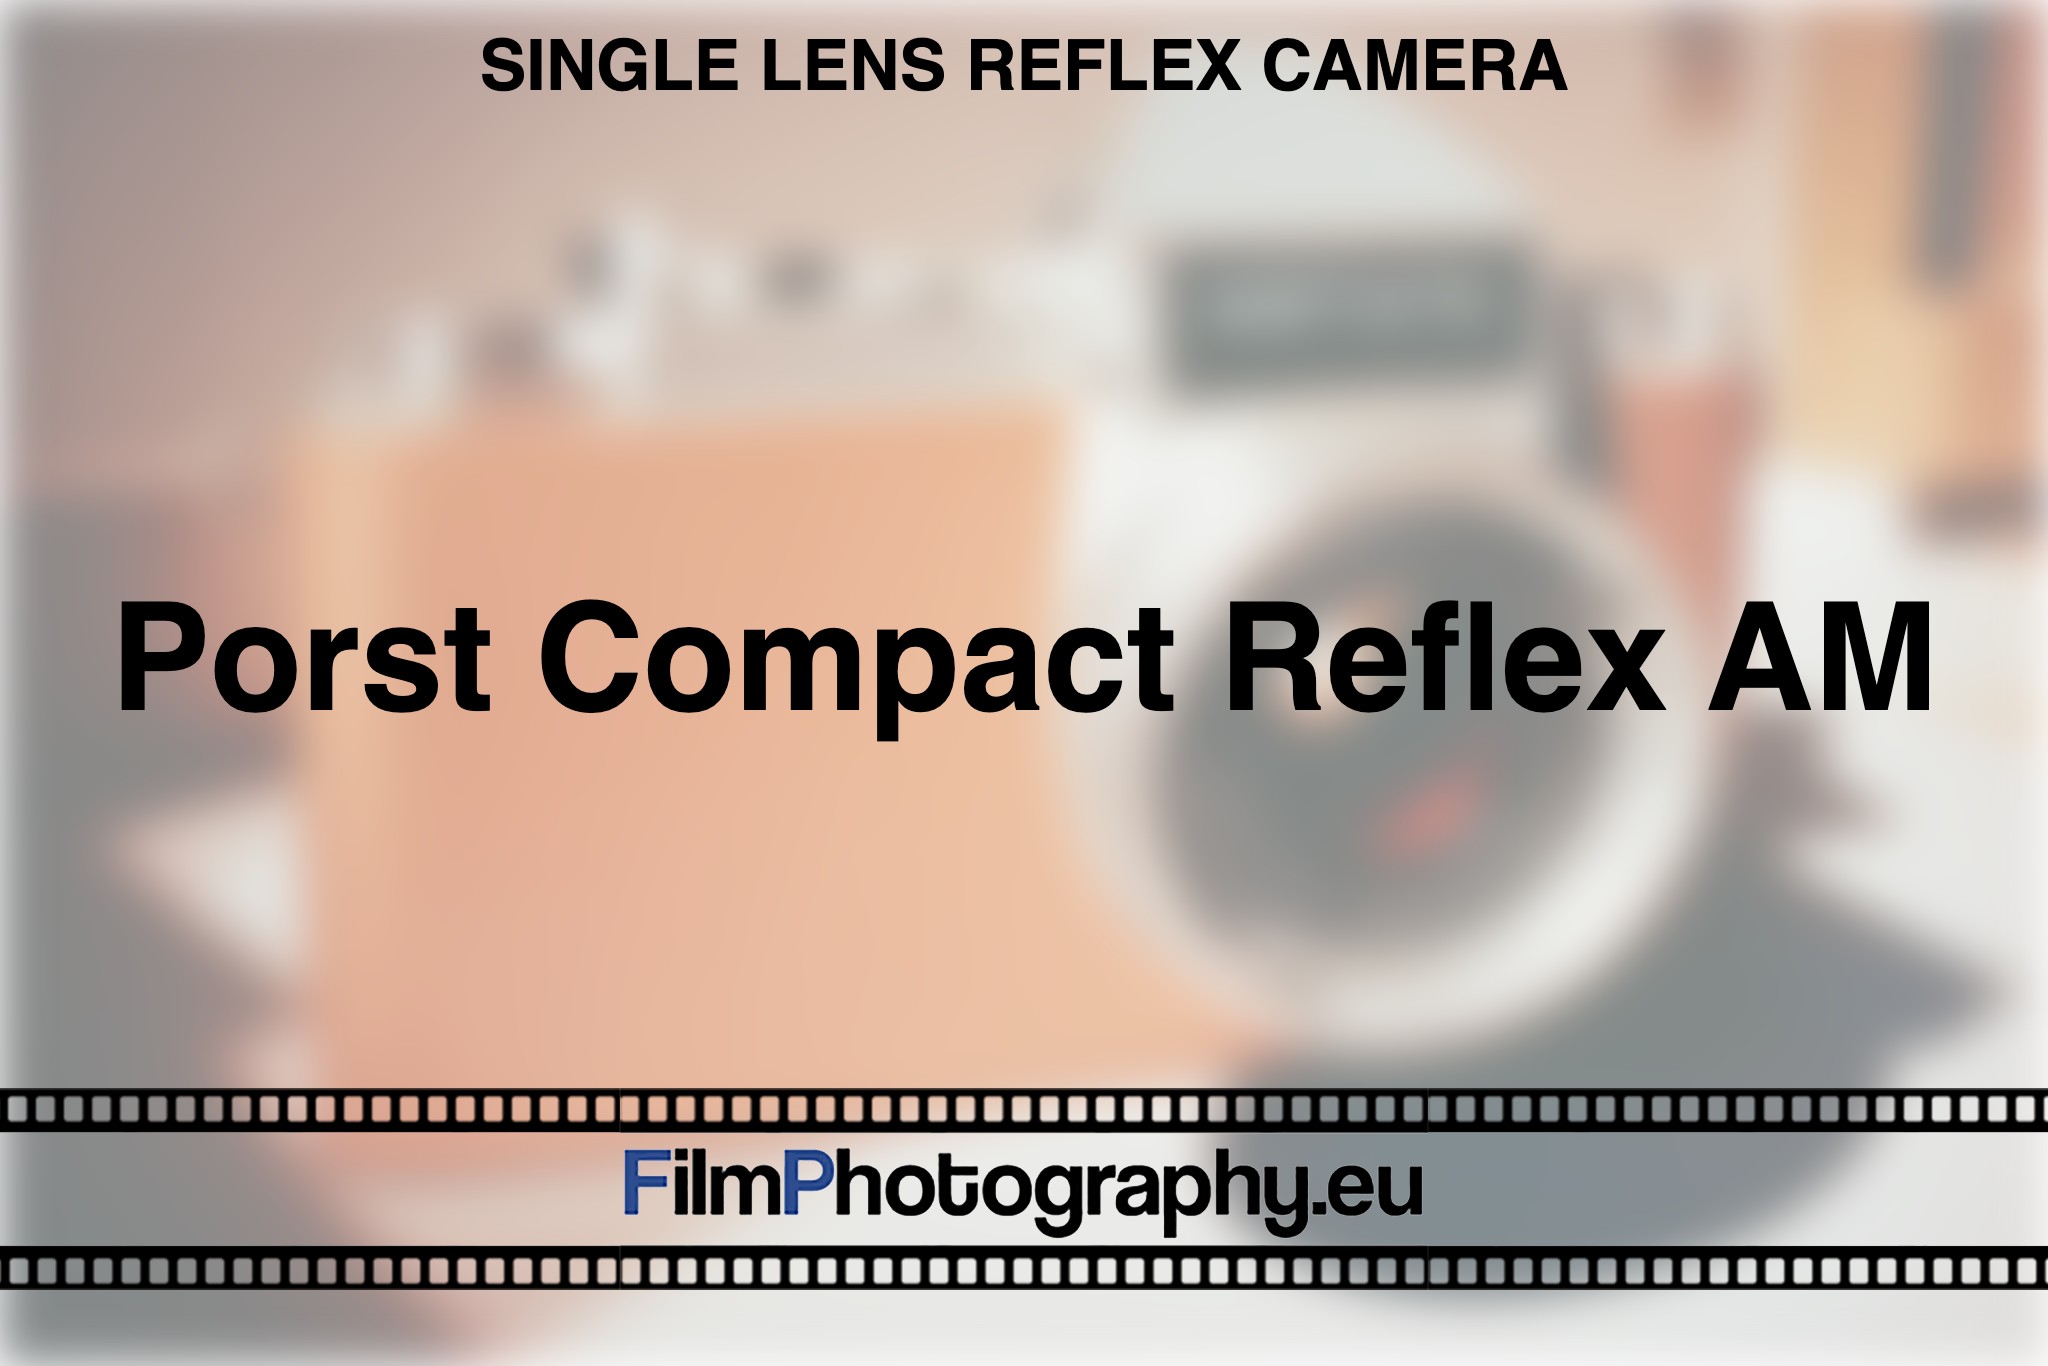 porst-compact-reflex-am-single-lens-reflex-camera-bnv